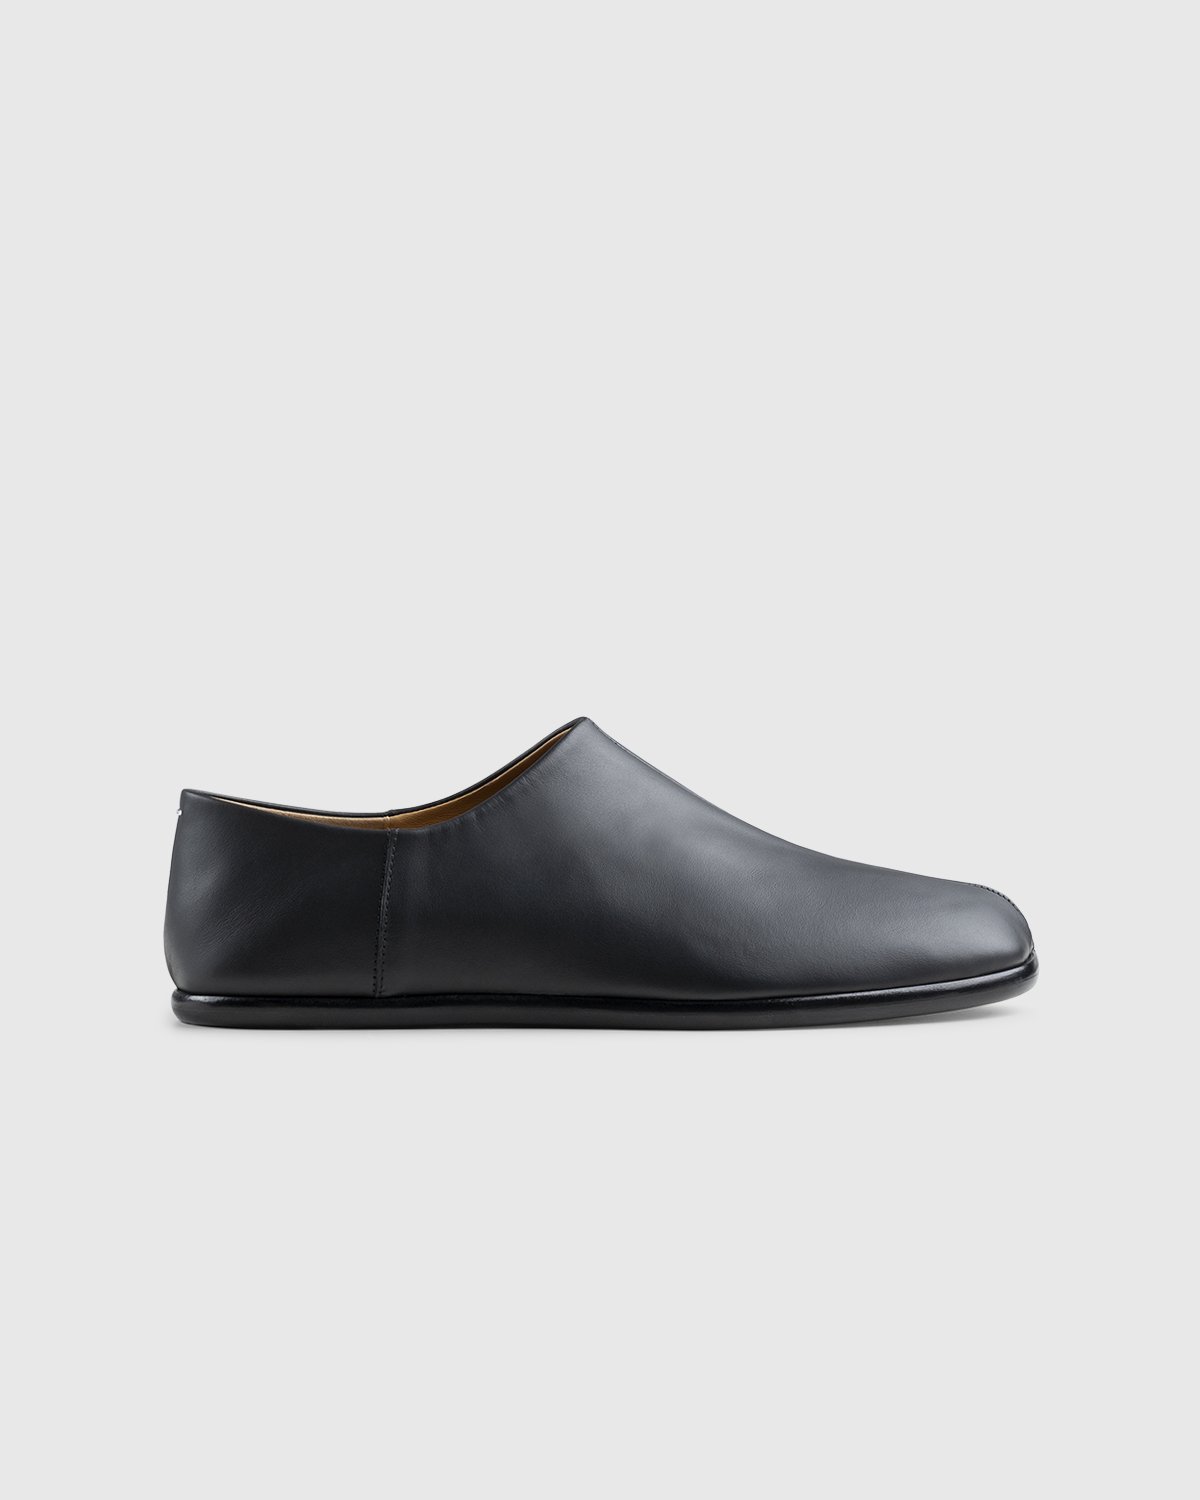 Maison Margiela - Tabi Slip On Black - Footwear - Black - Image 1